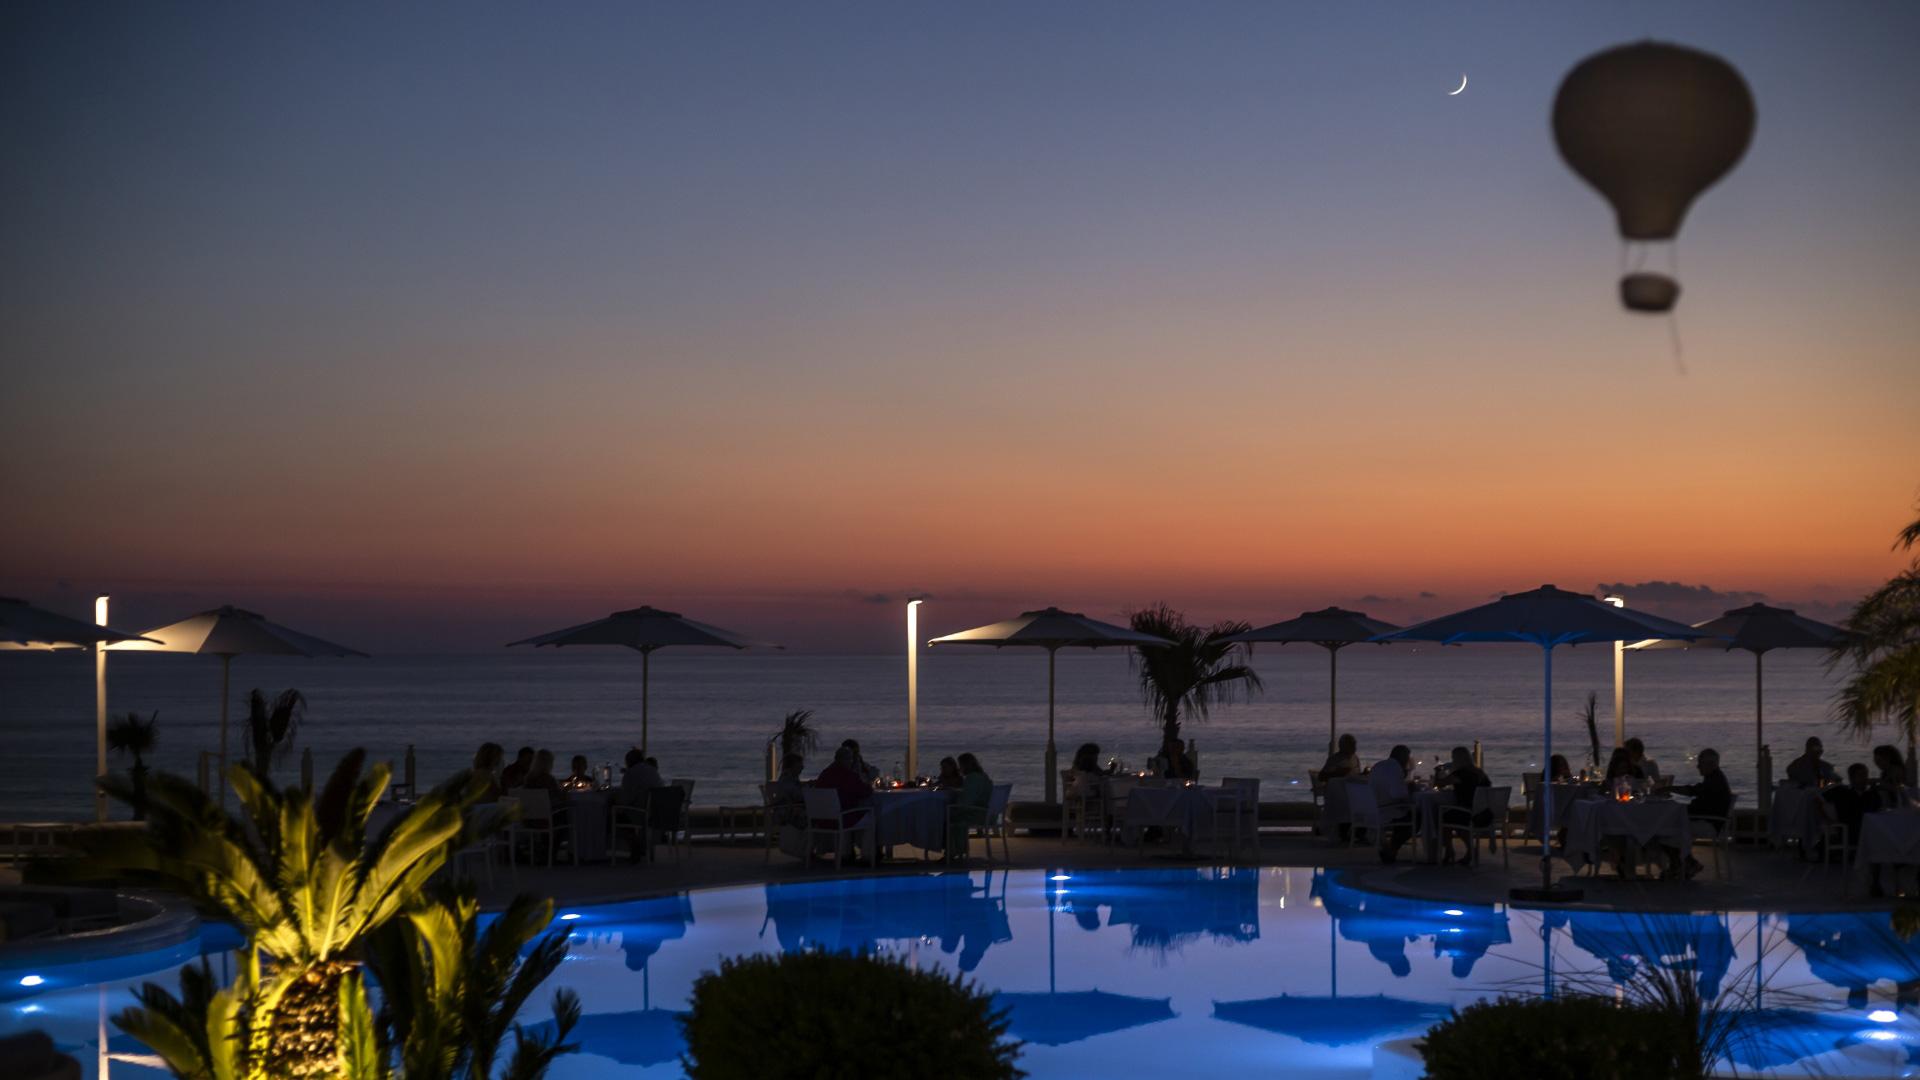 Coucher de soleil sur la mer avec piscine illuminée et des gens dînant.